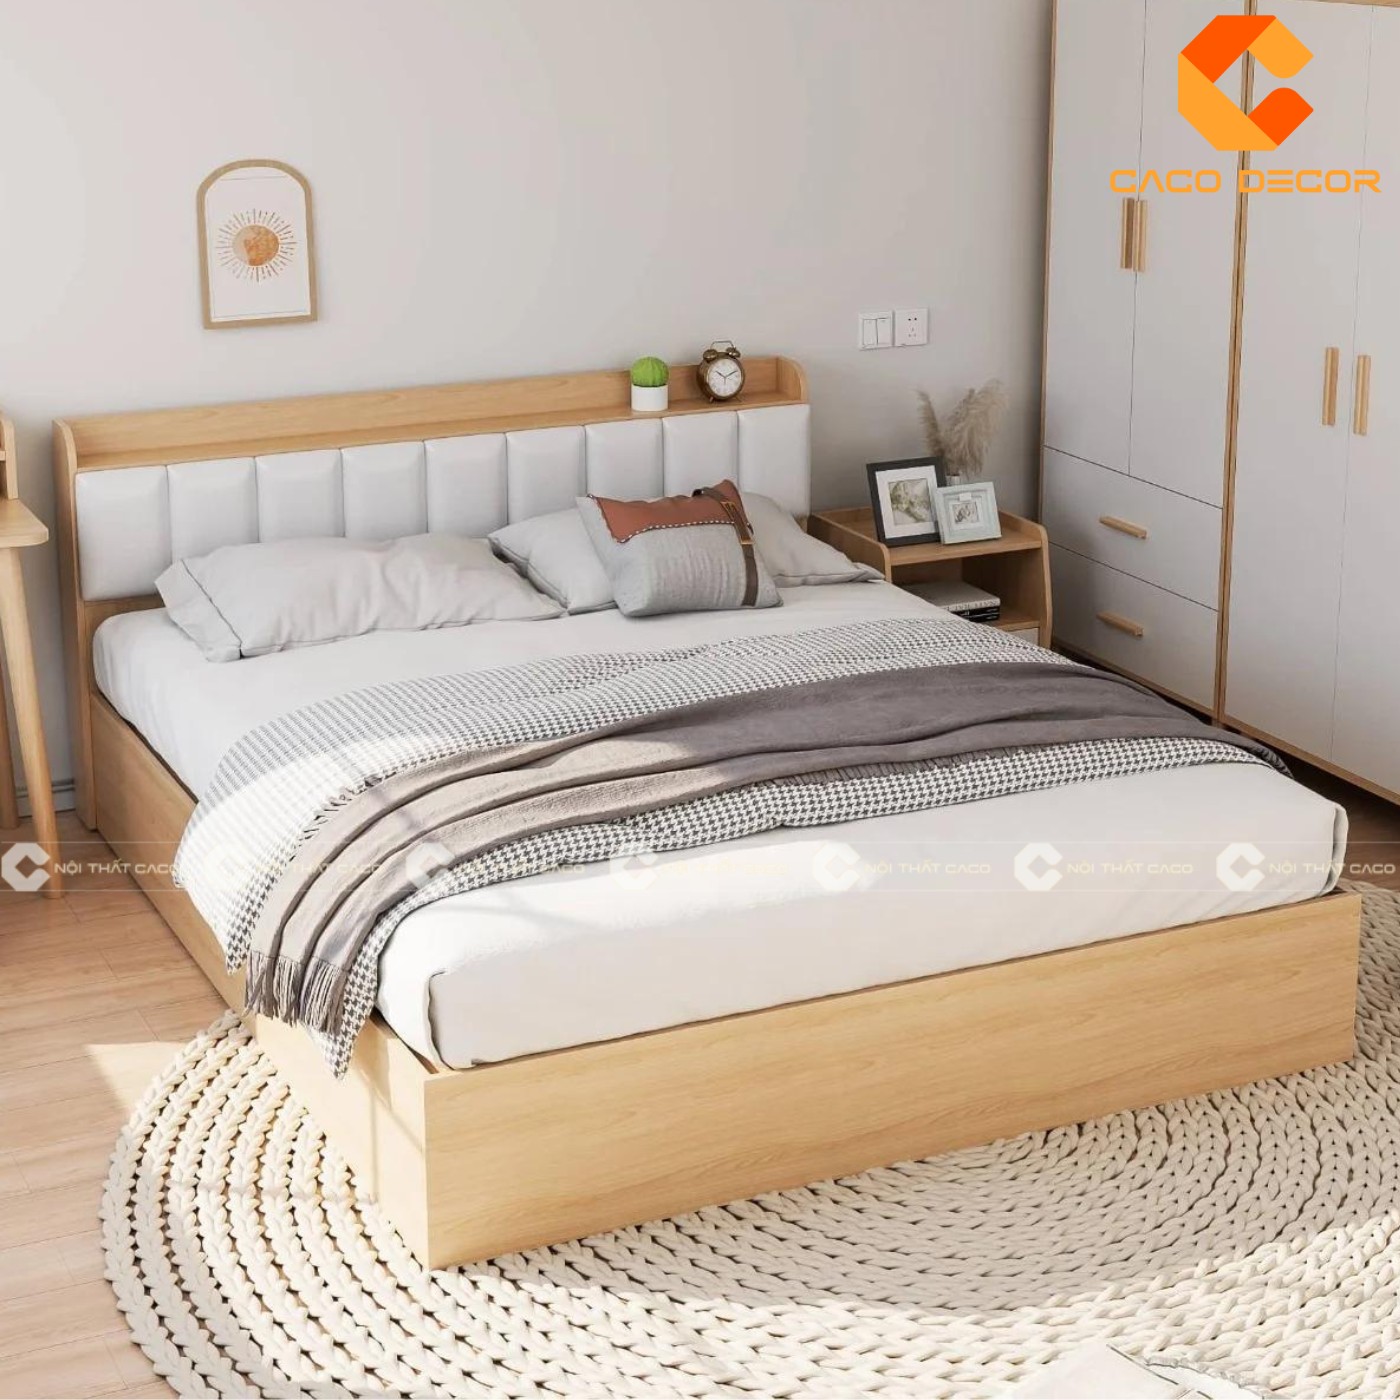 Giường ngủ gỗ công nghiệp đẹp, chất lượng với giá tốt nhất thị trường 14